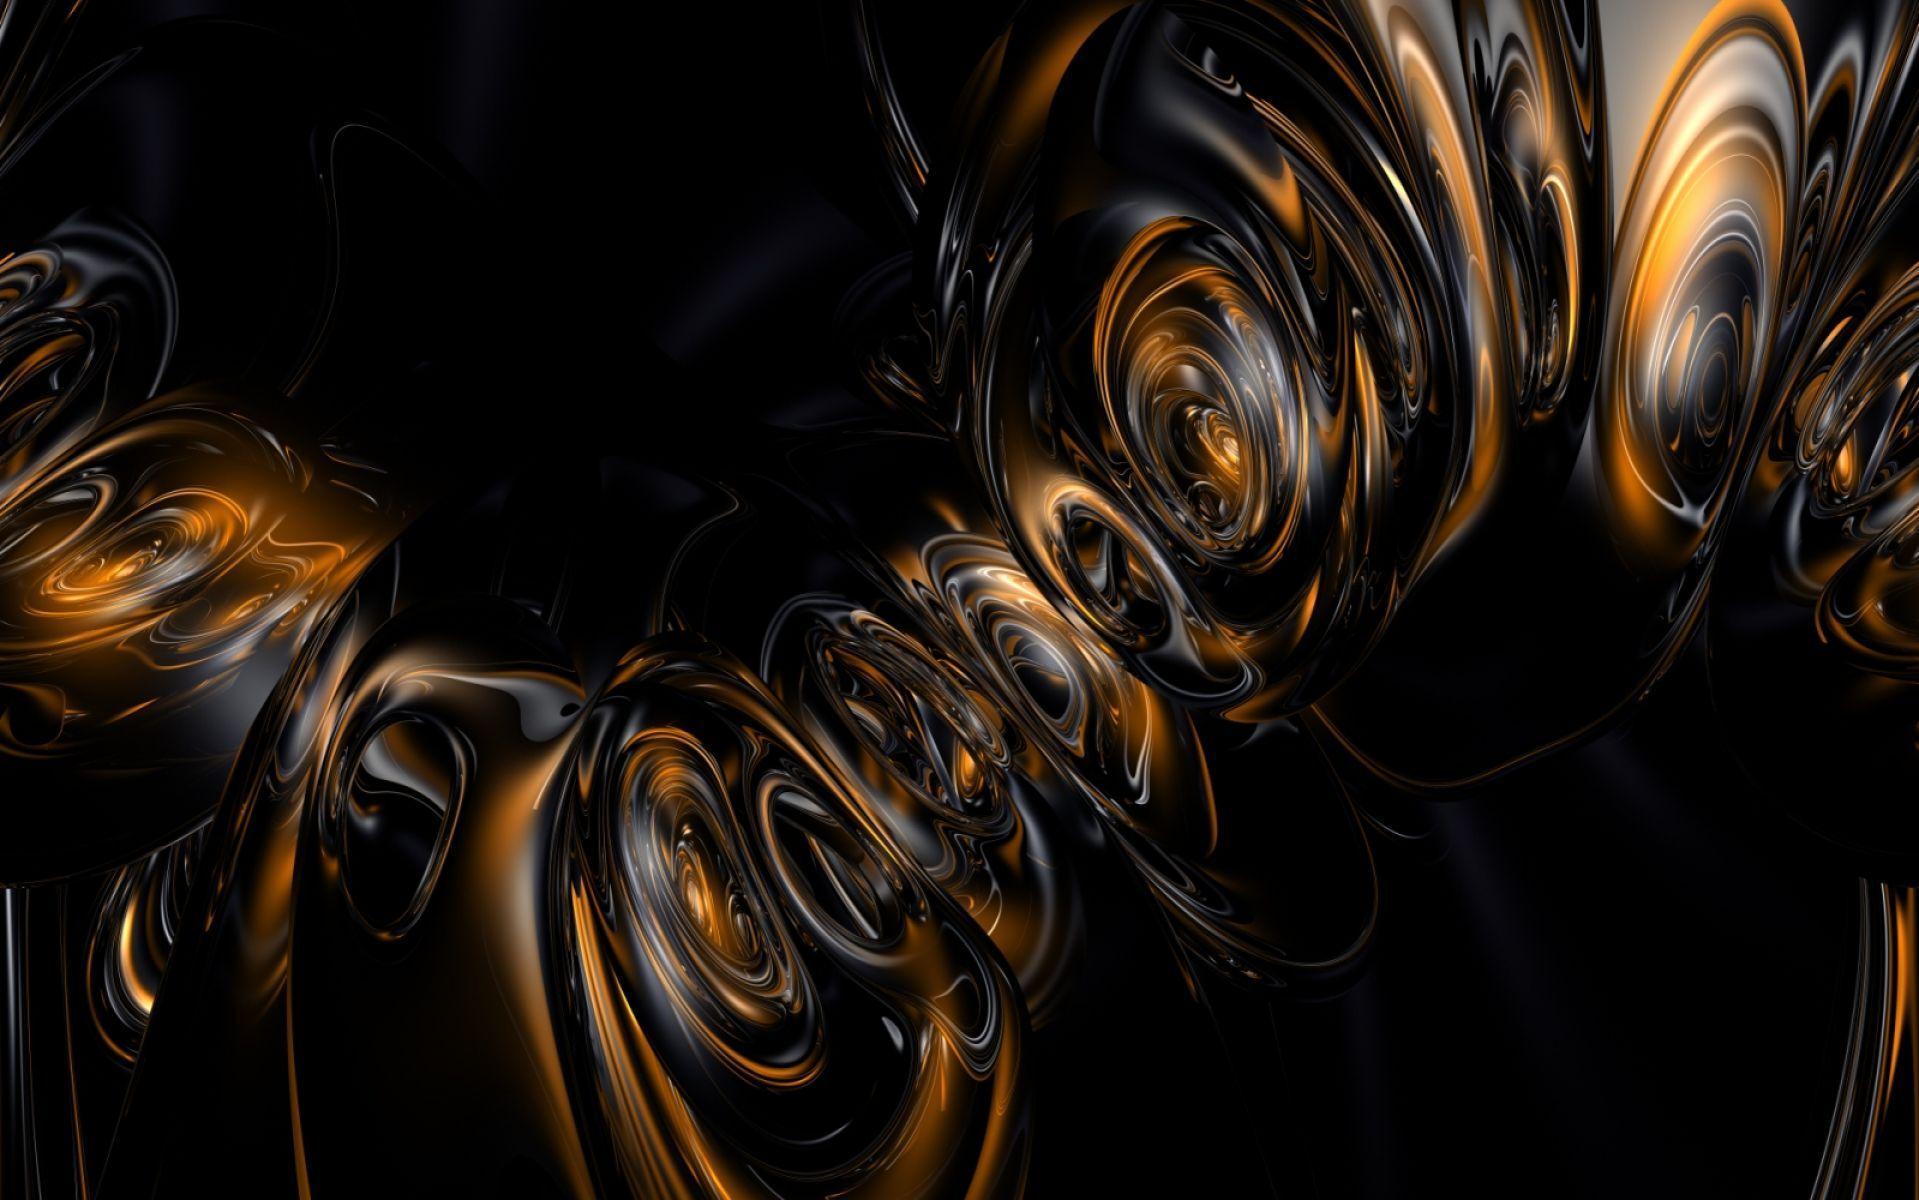 3D Art Complex Spiral Design Wallpaper. HD 3D and Abstract